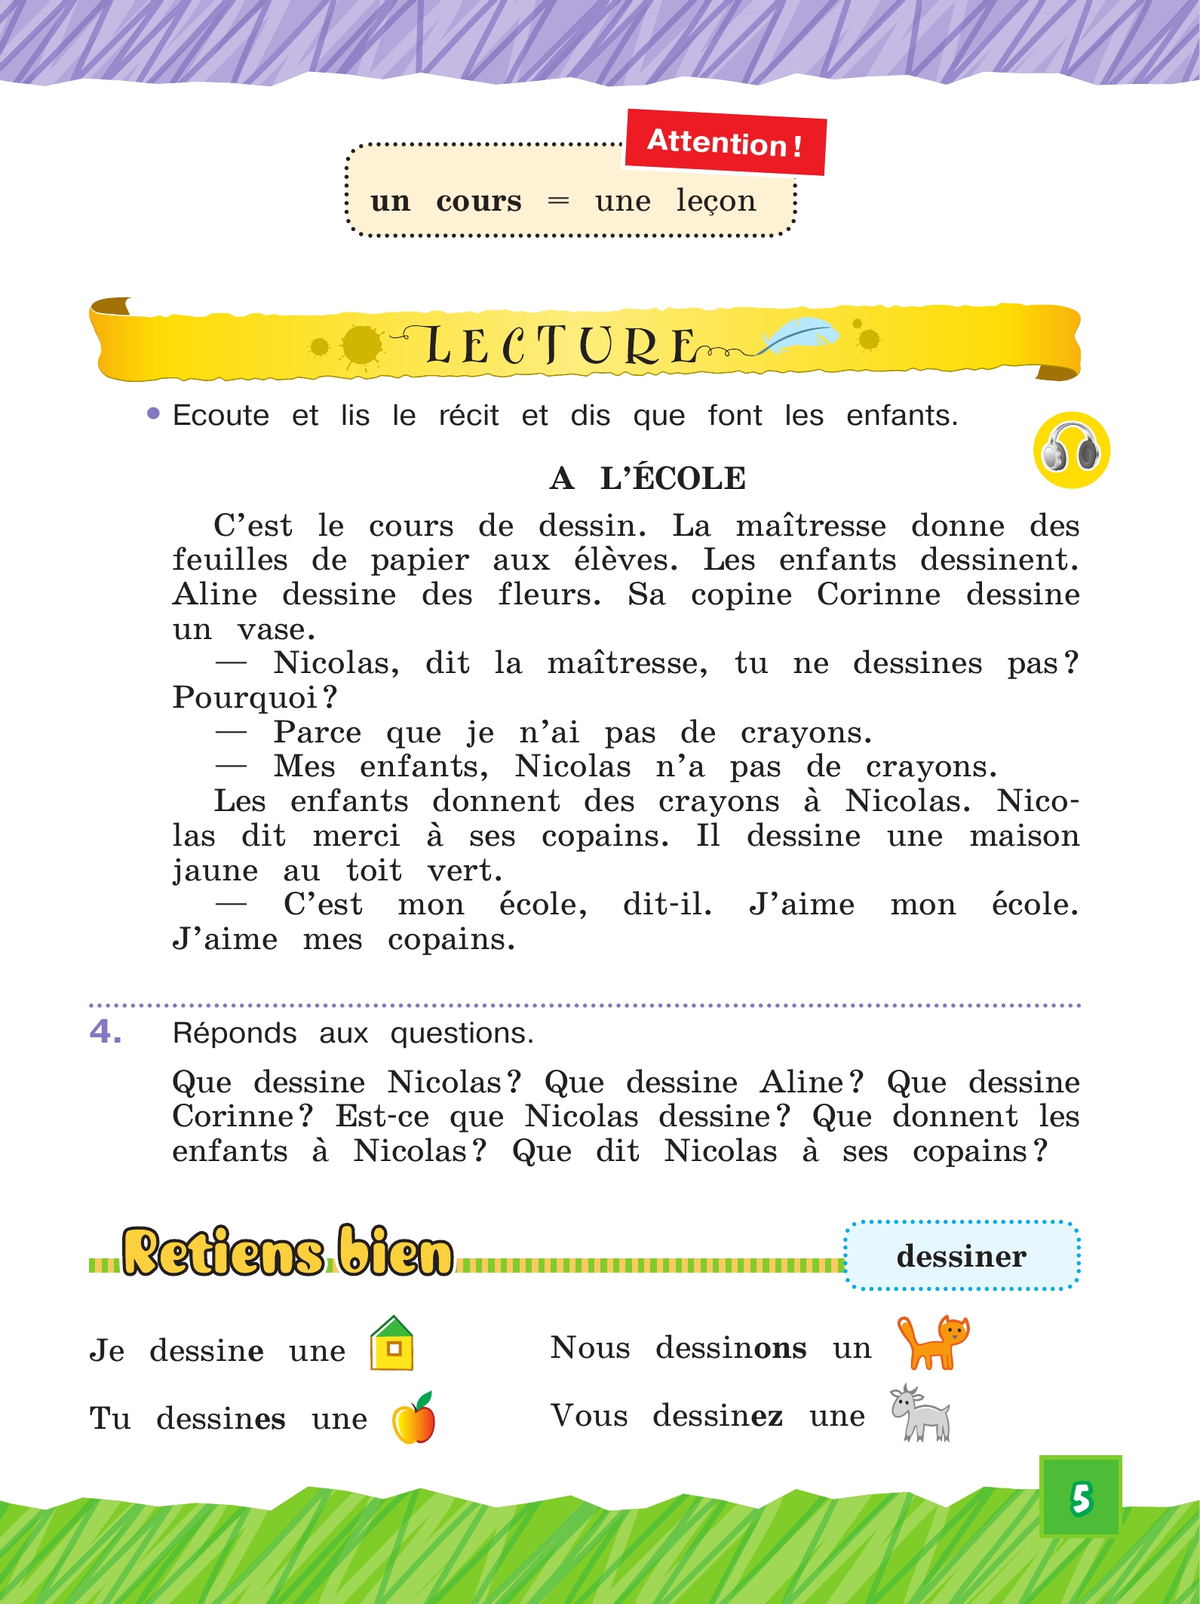 Французский язык. 3 класс. Учебник. В 2 ч. Часть 1. Углублённый уровень 5